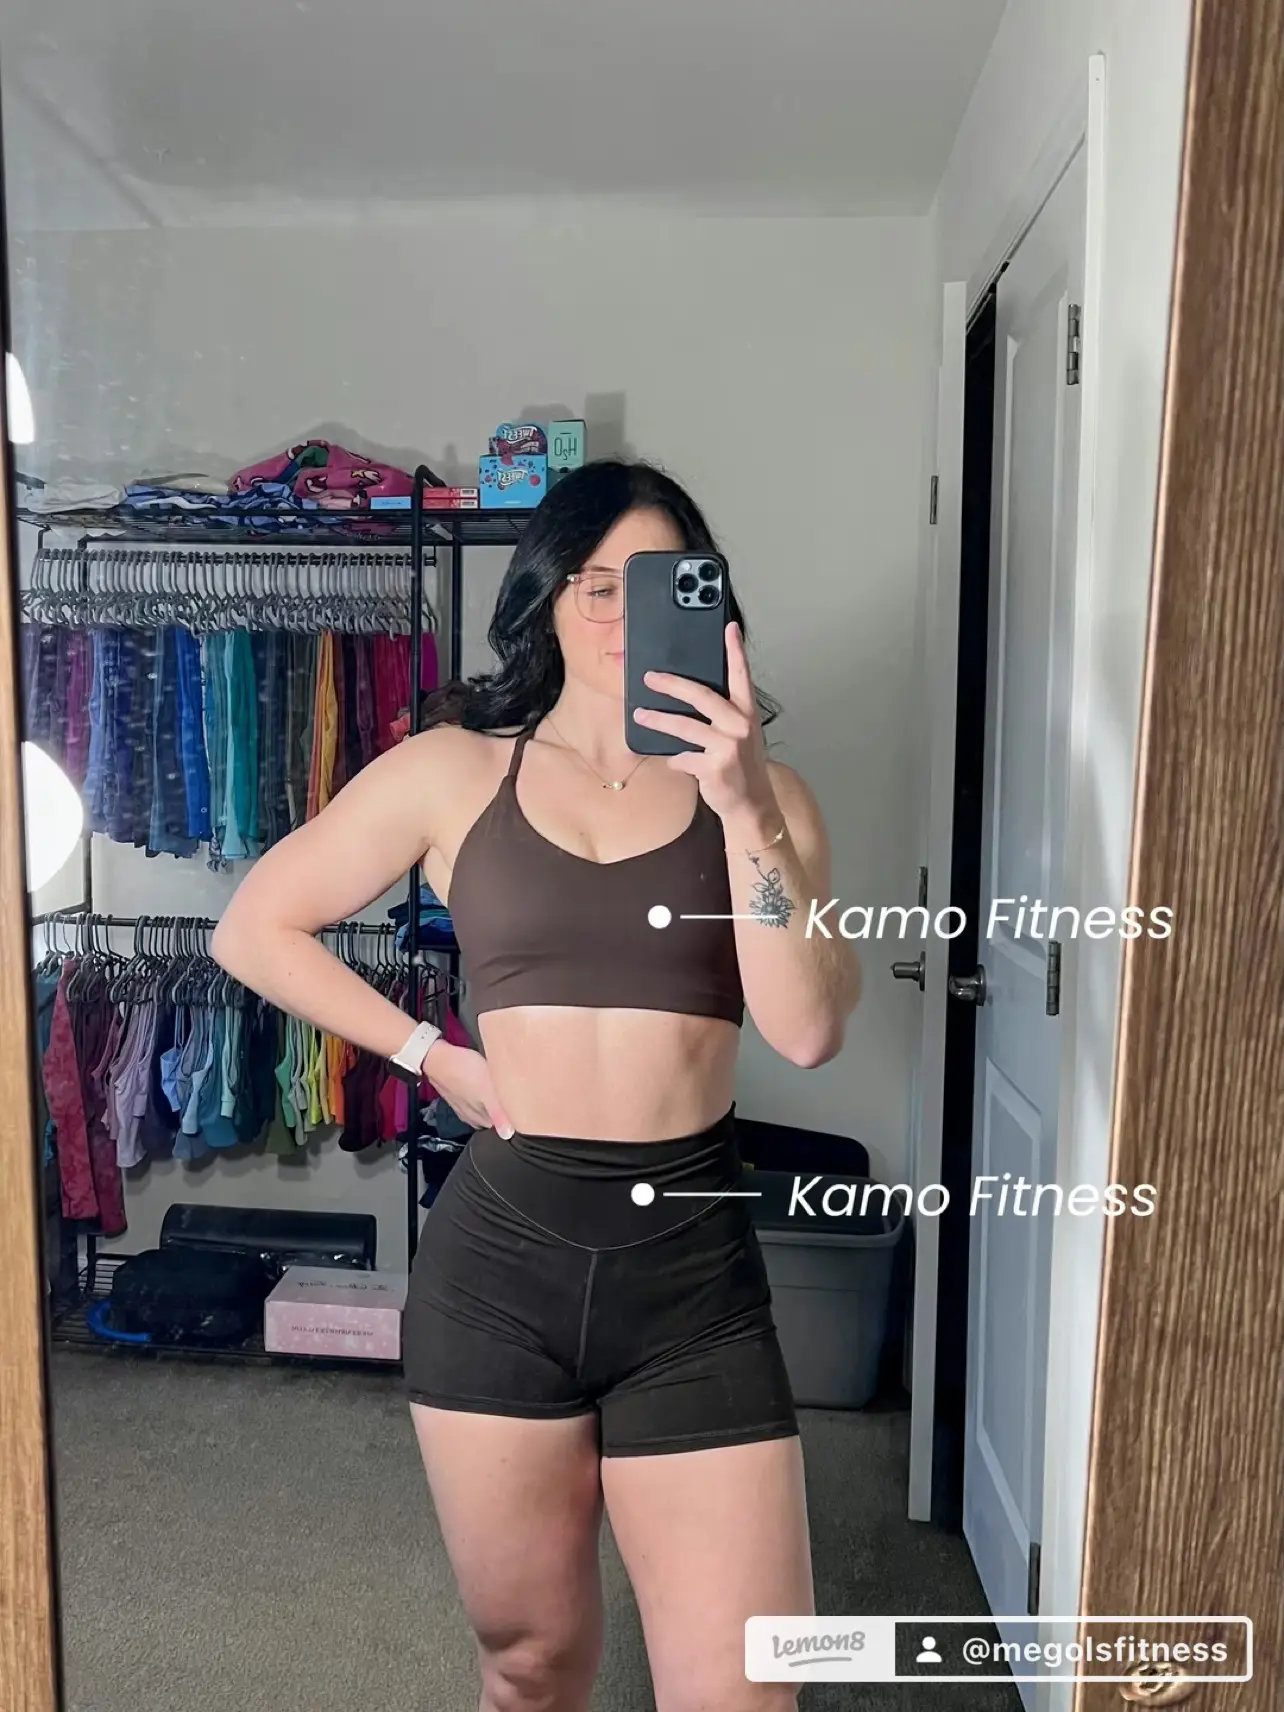 Kamo Fitness sports bra size M